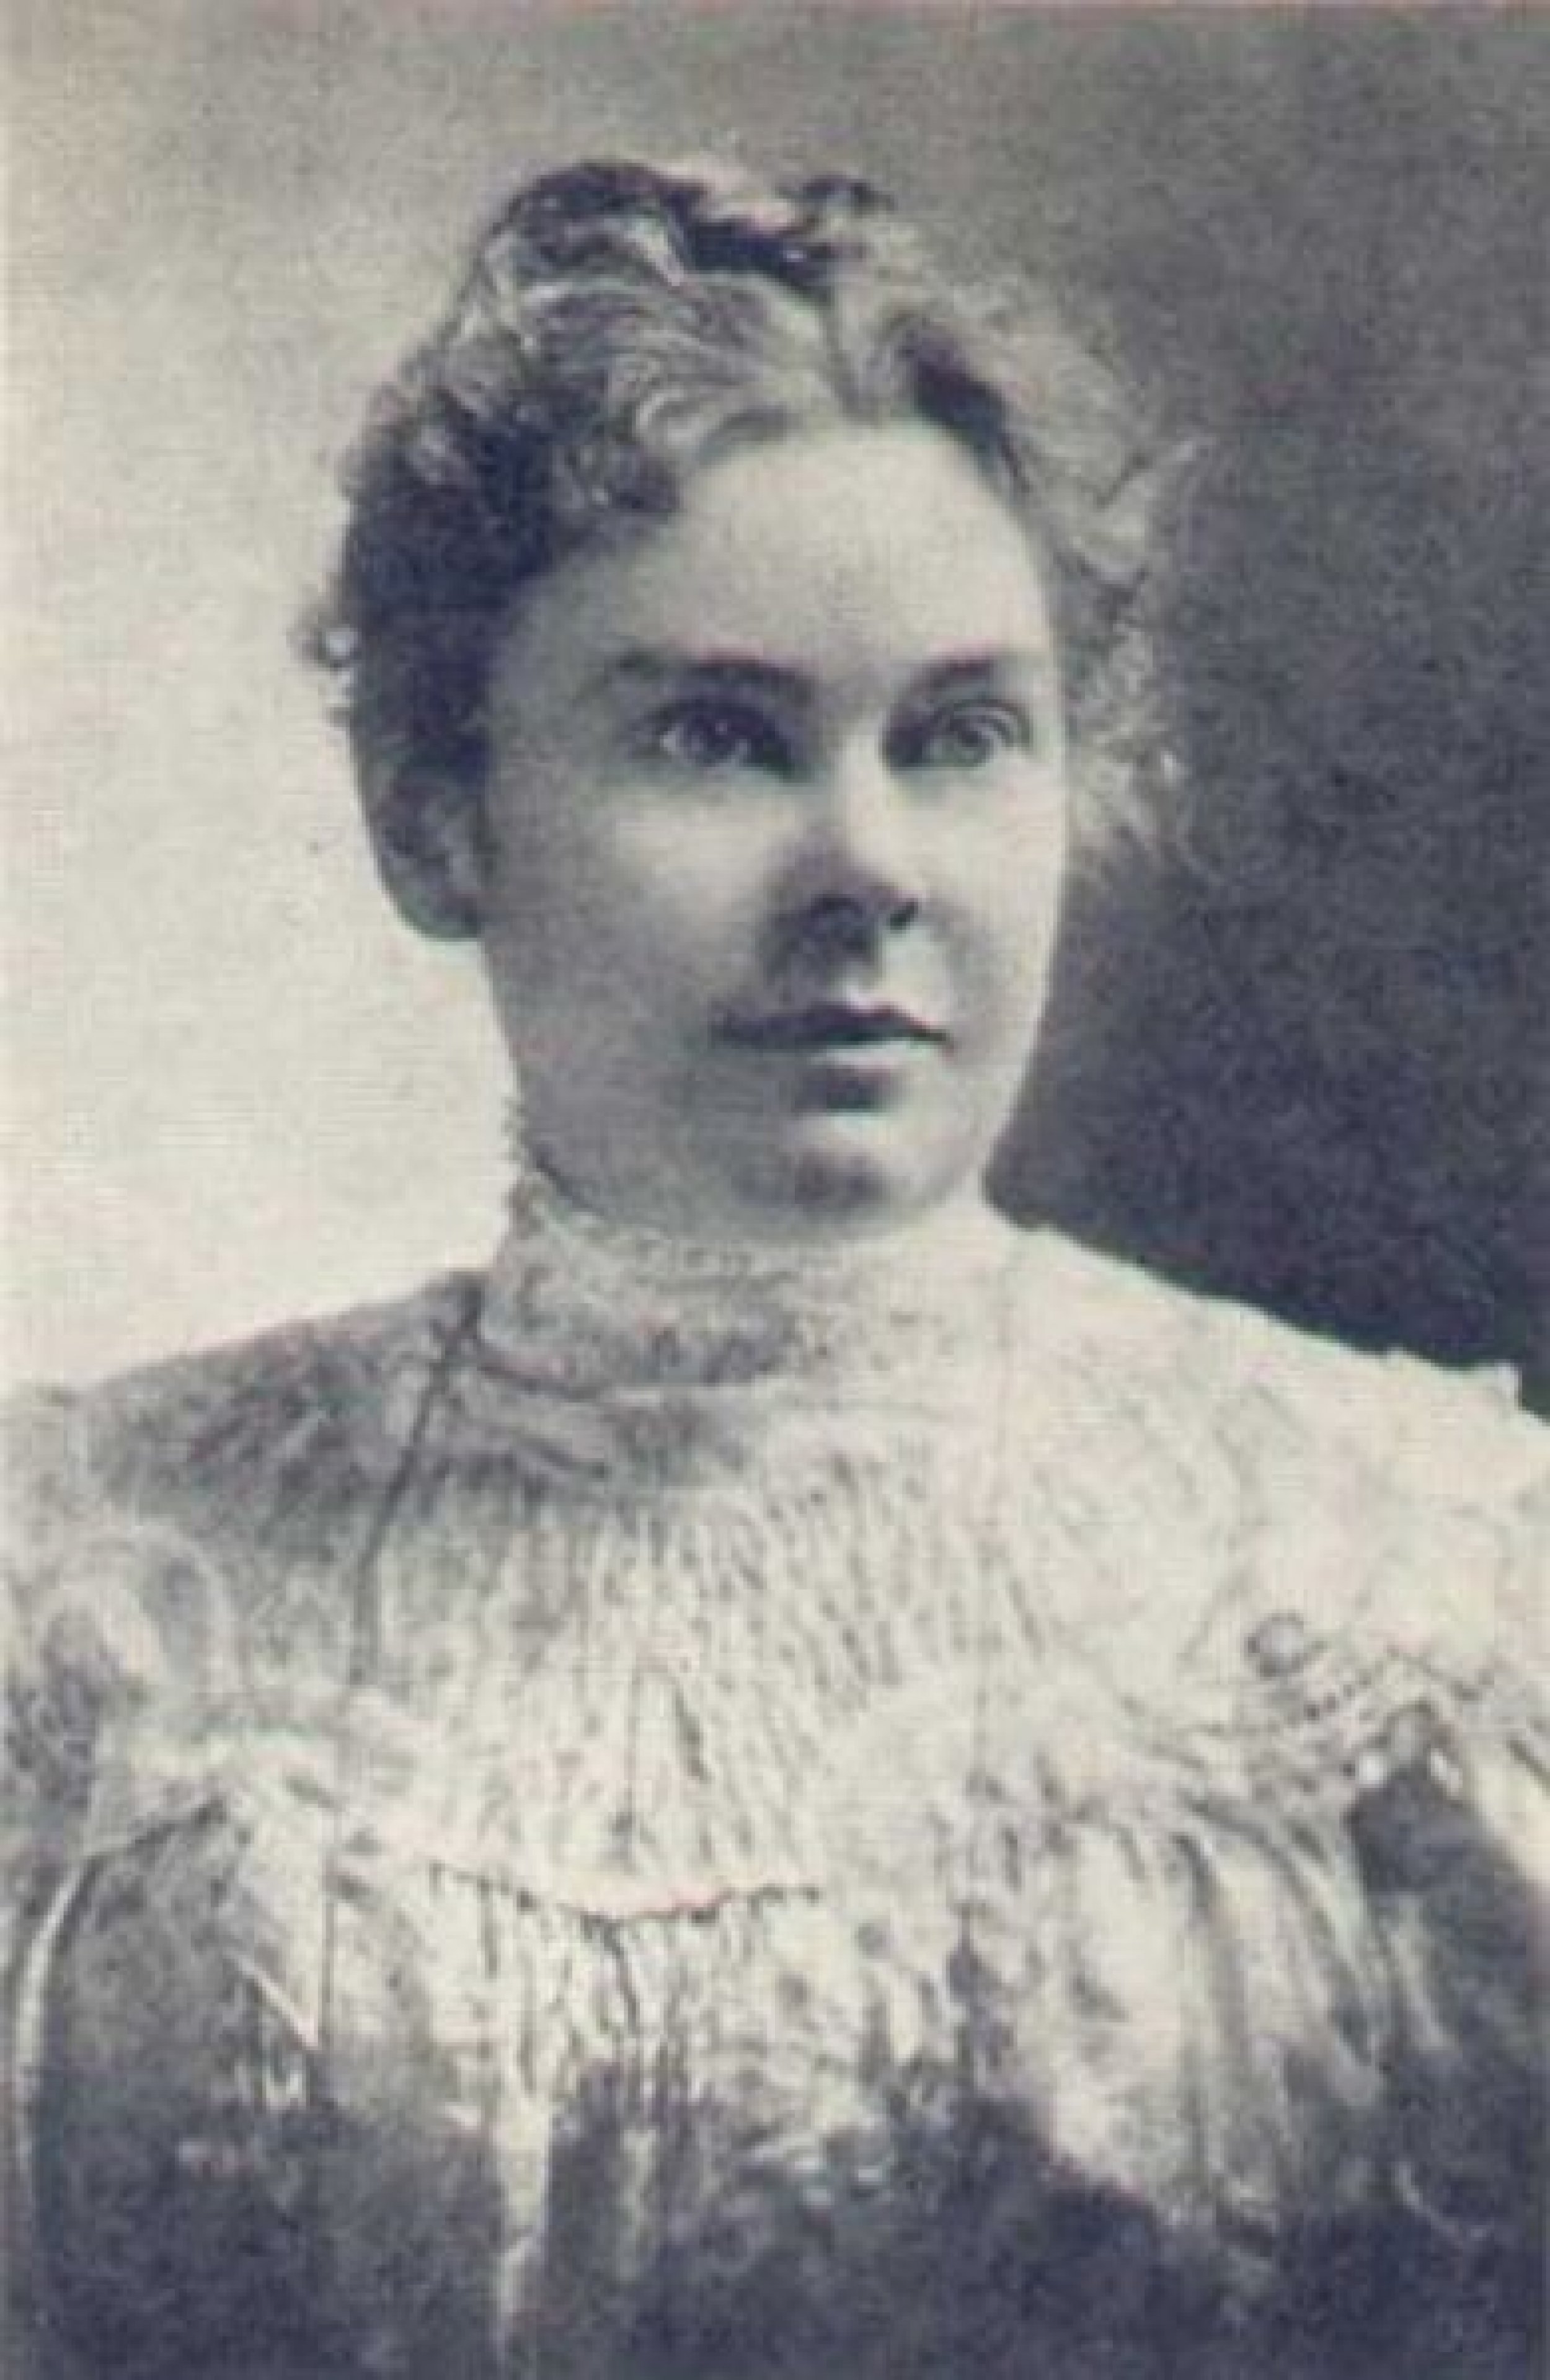 Lizzie Borden Murder Trial